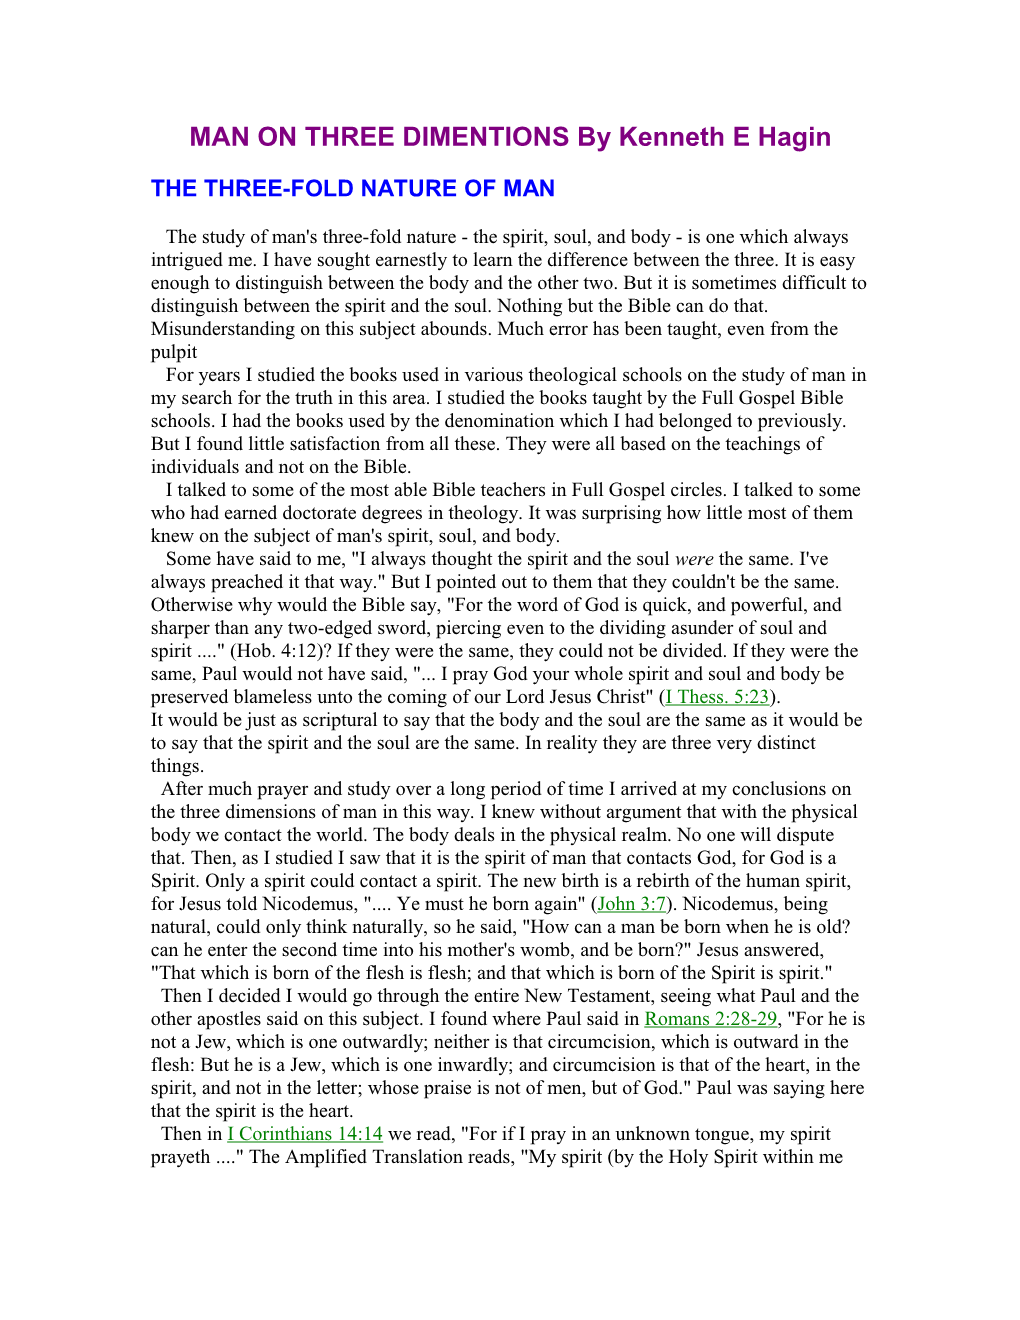 MAN on THREE DIMENTIONS by Kenneth E Hagin